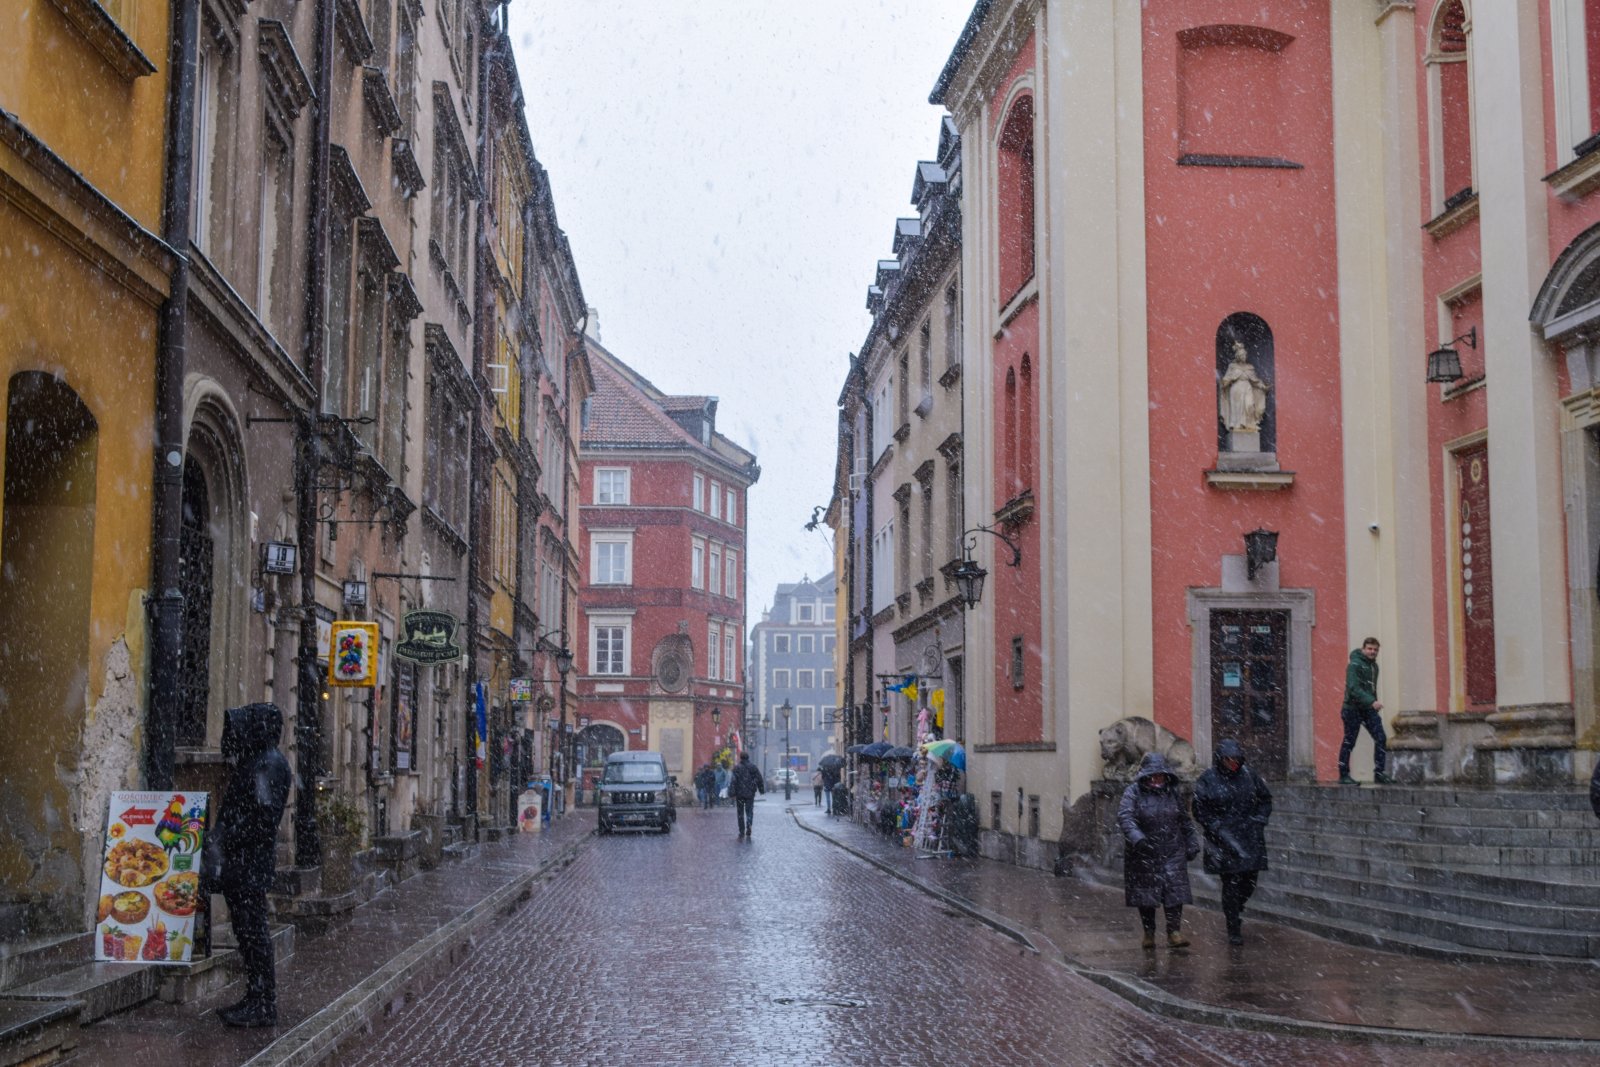 Warsaw (728).jpg